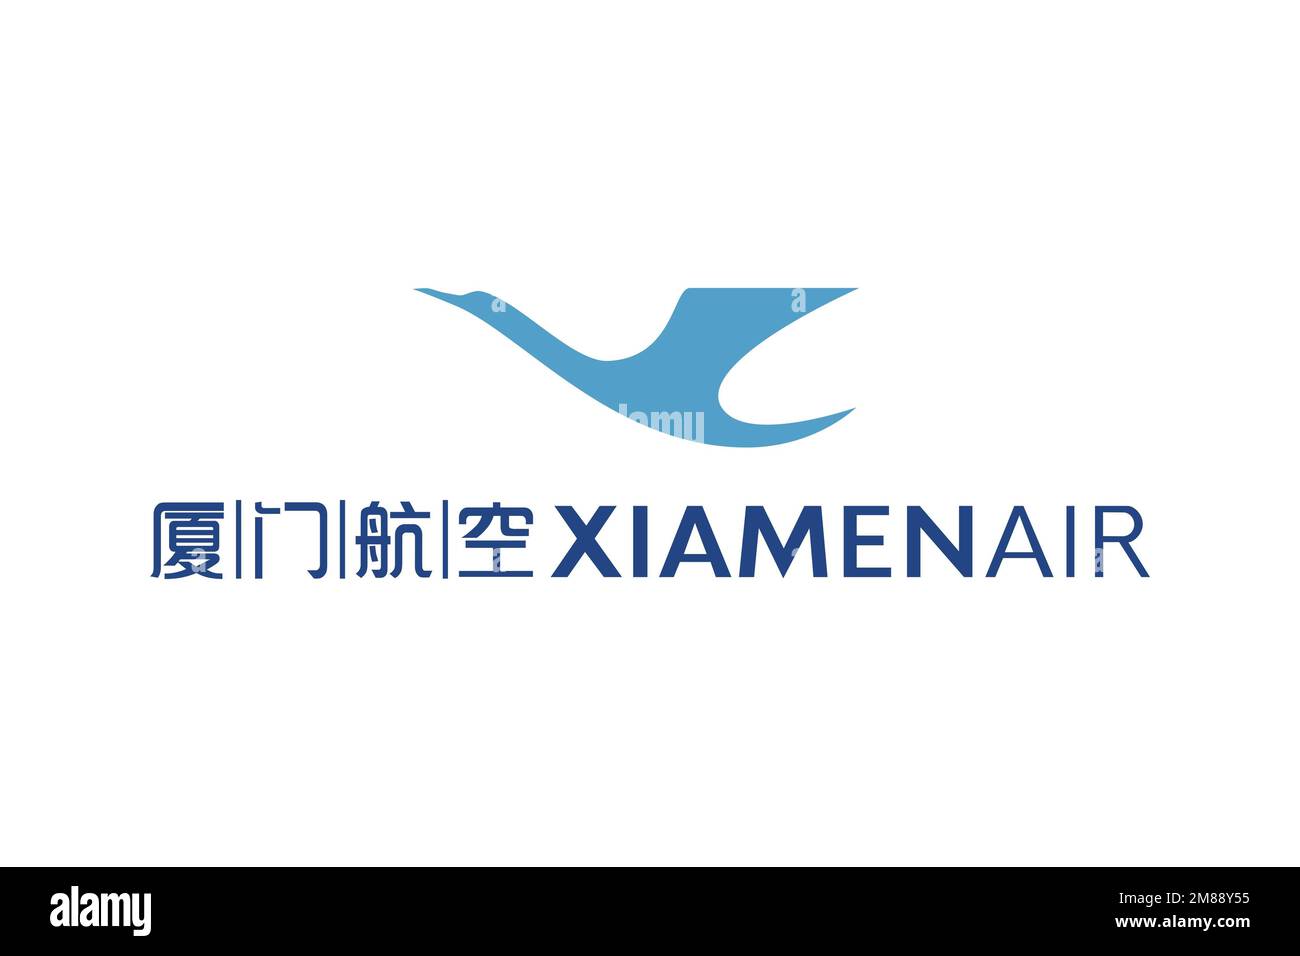 XiamenAir, Logo, White background Stock Photo